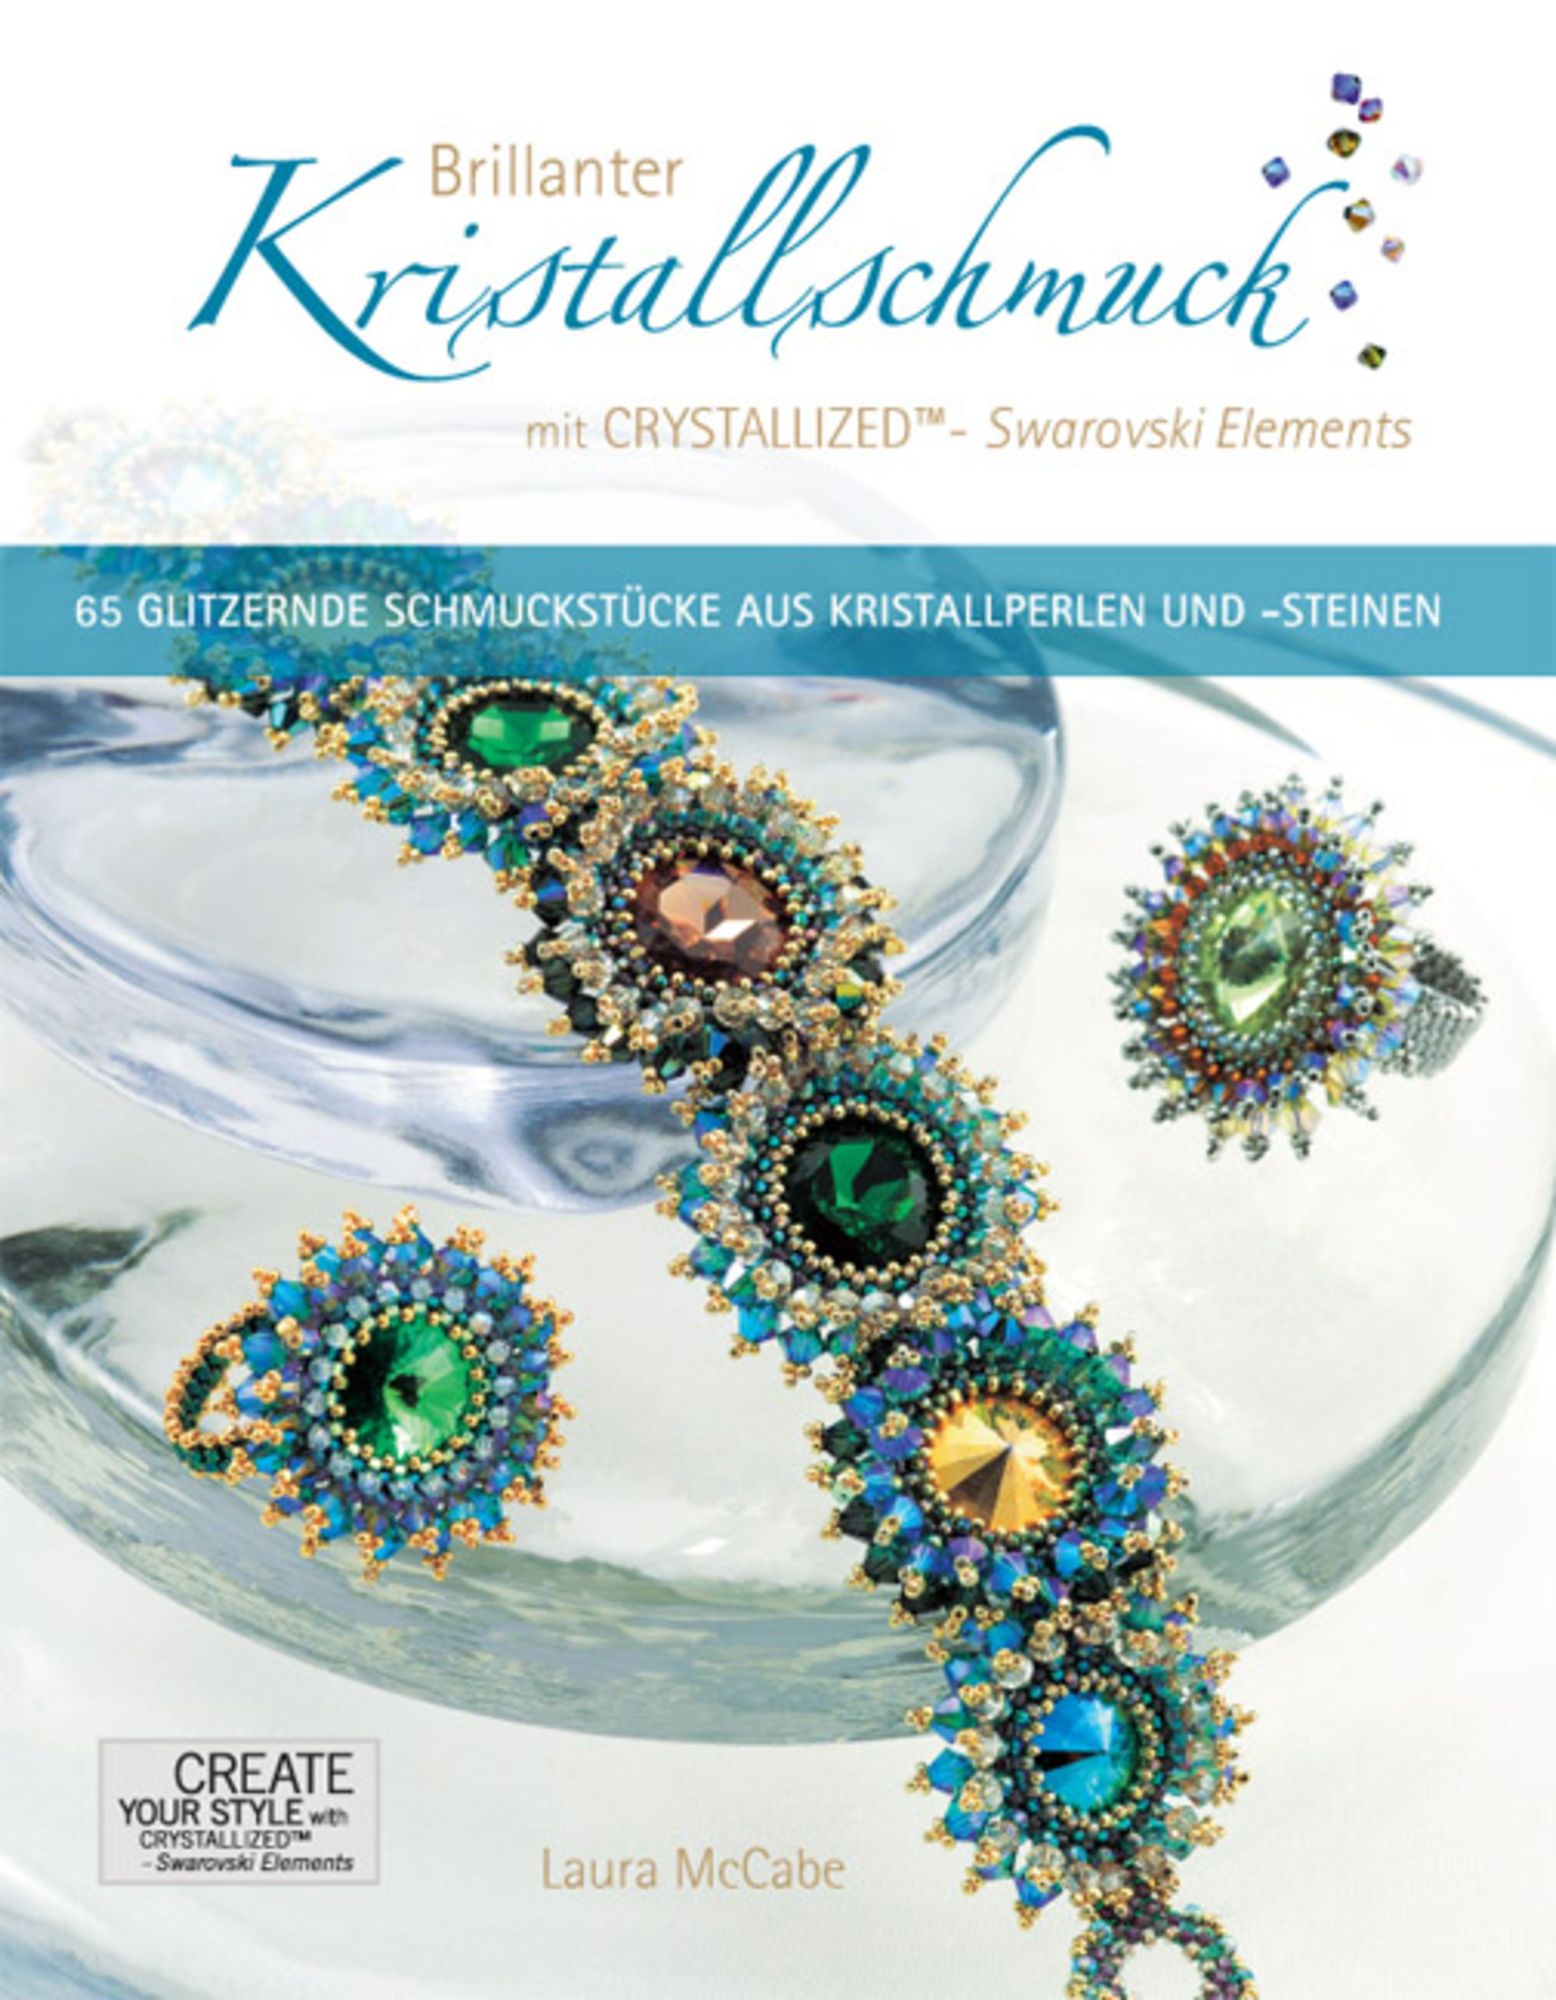 Brillanter Kristallschmuck mit CRYSTALLIZED™ - Swarovski Elements\' von  \'Laura McCabe\' - Buch - \'978-3-940577-00-9\'